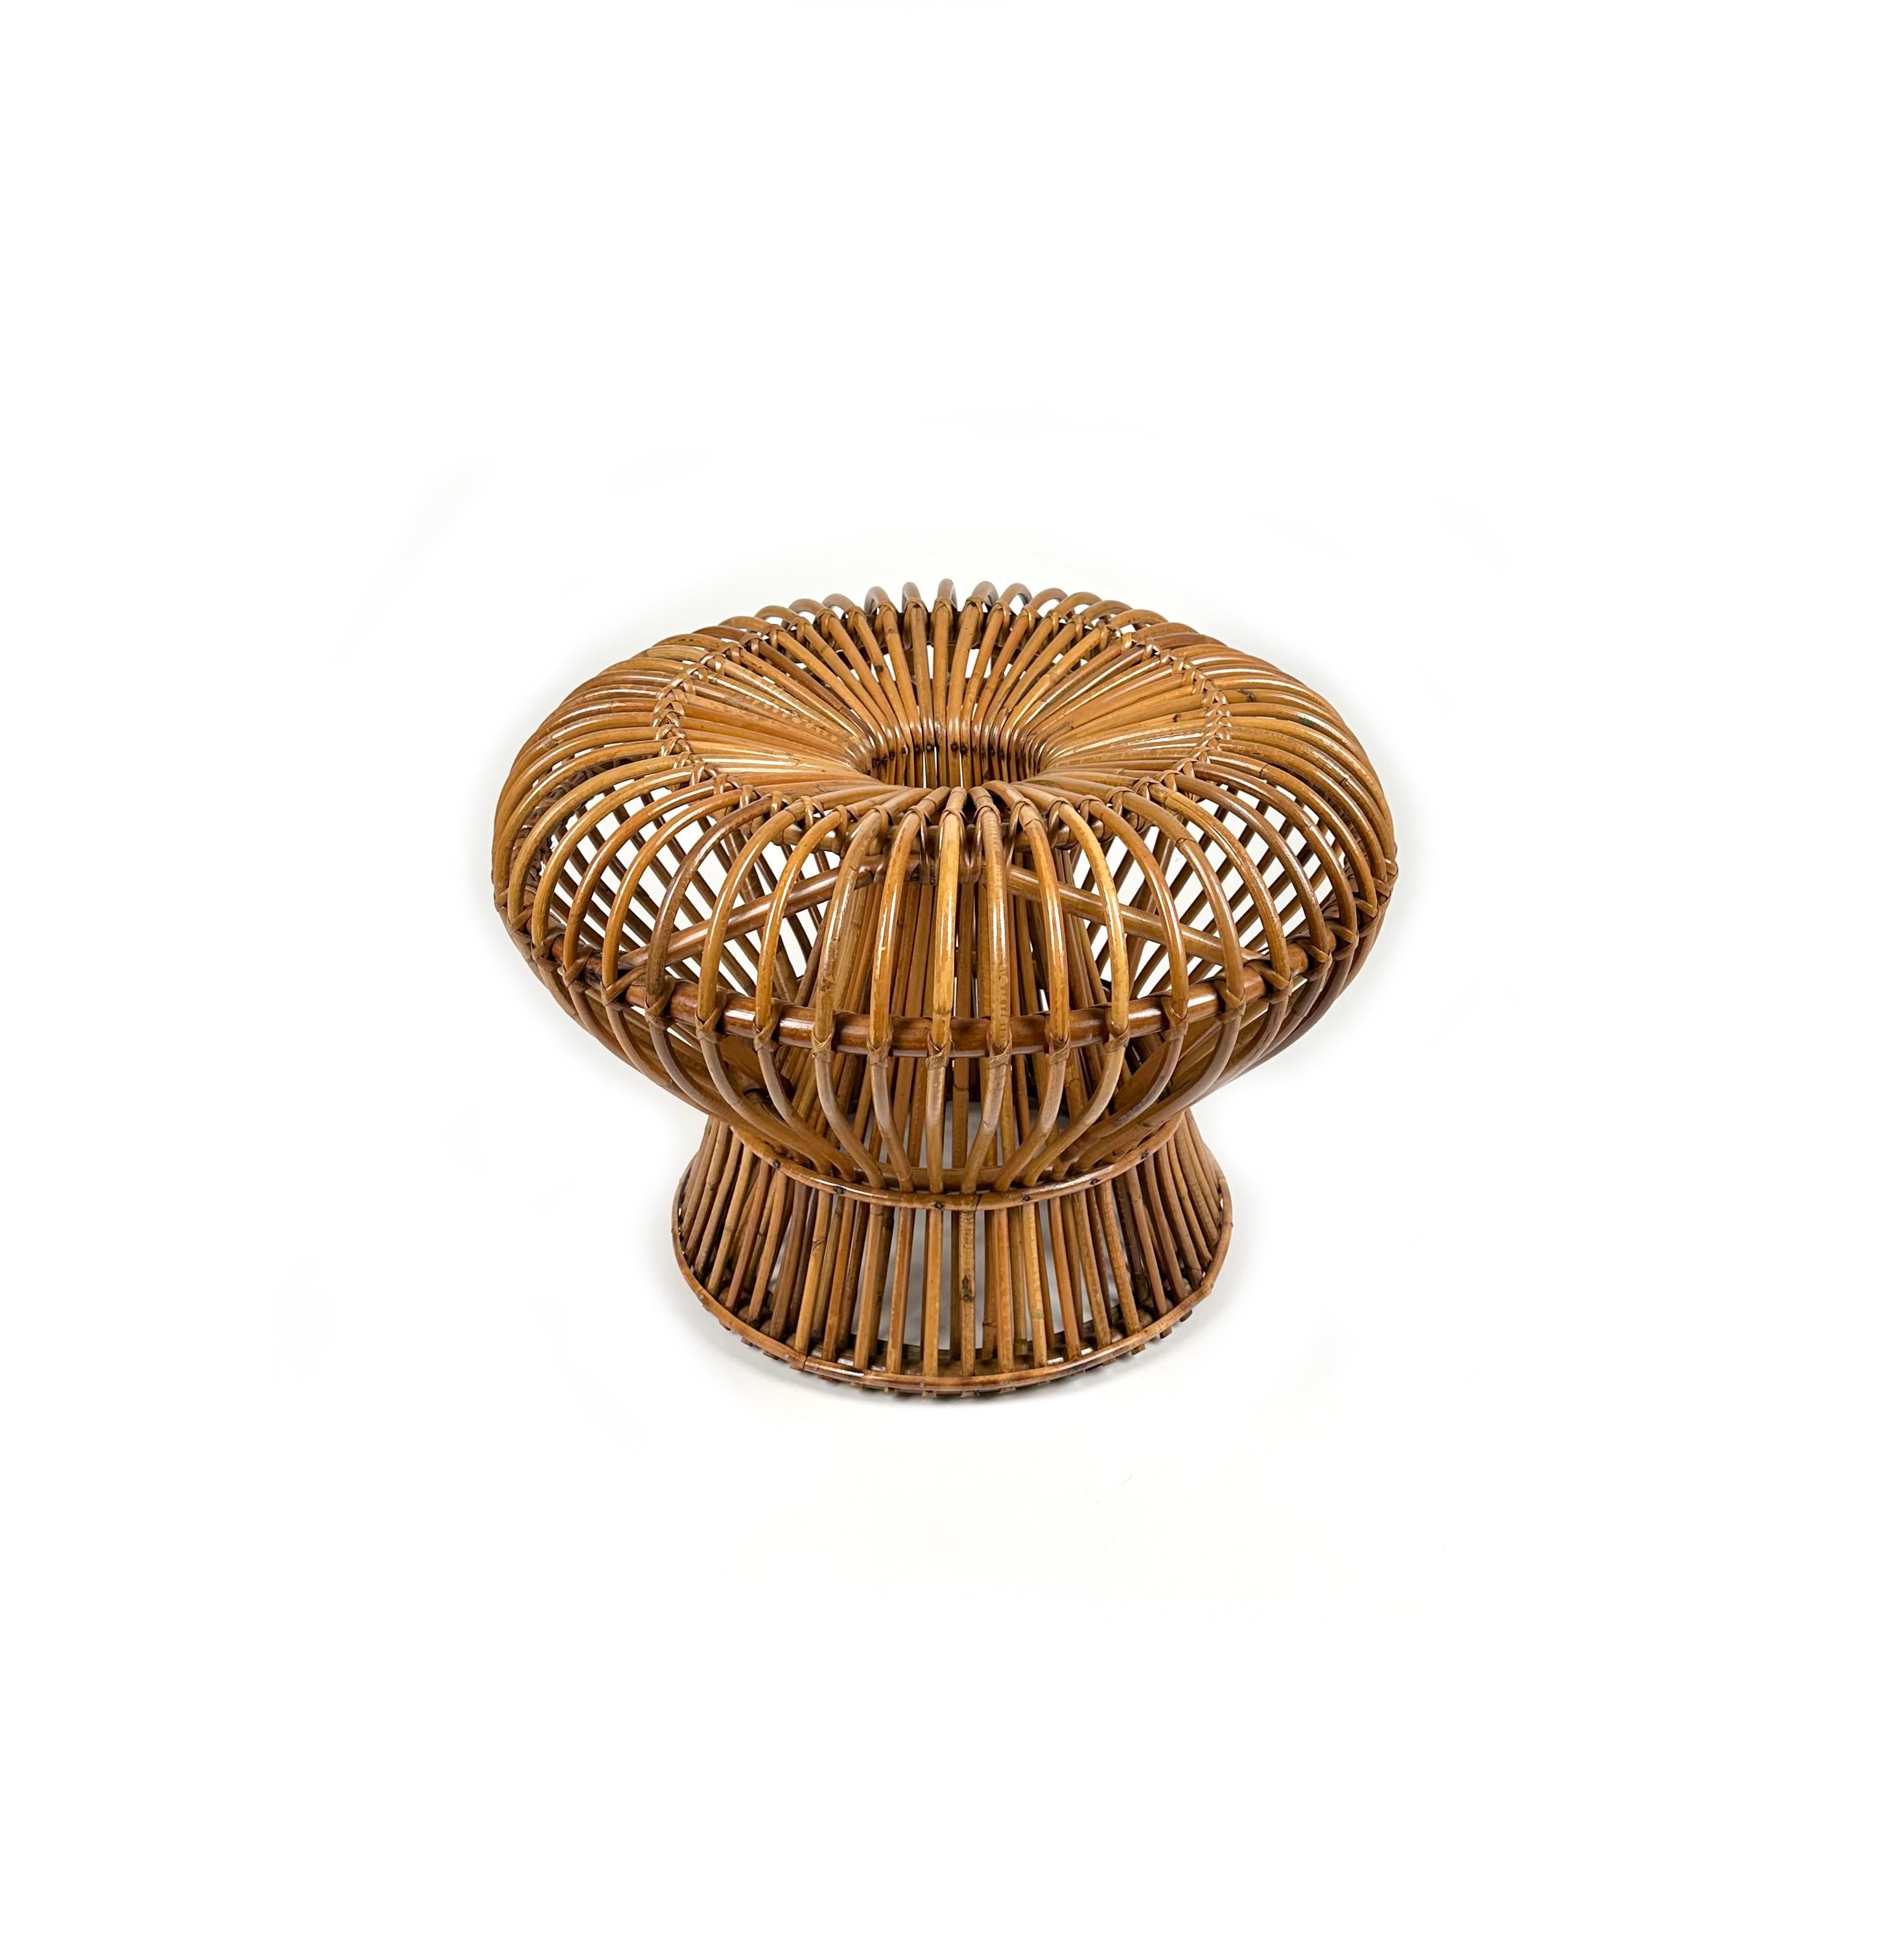 Etonnant ottoman / tabouret / pouf / table d'appoint du milieu du siècle dernier en bambou et rotin dans le style de Franco Albini.

Cette belle pièce est très bien fabriquée en rotin de haute qualité, ce qui lui confère une apparence vraiment